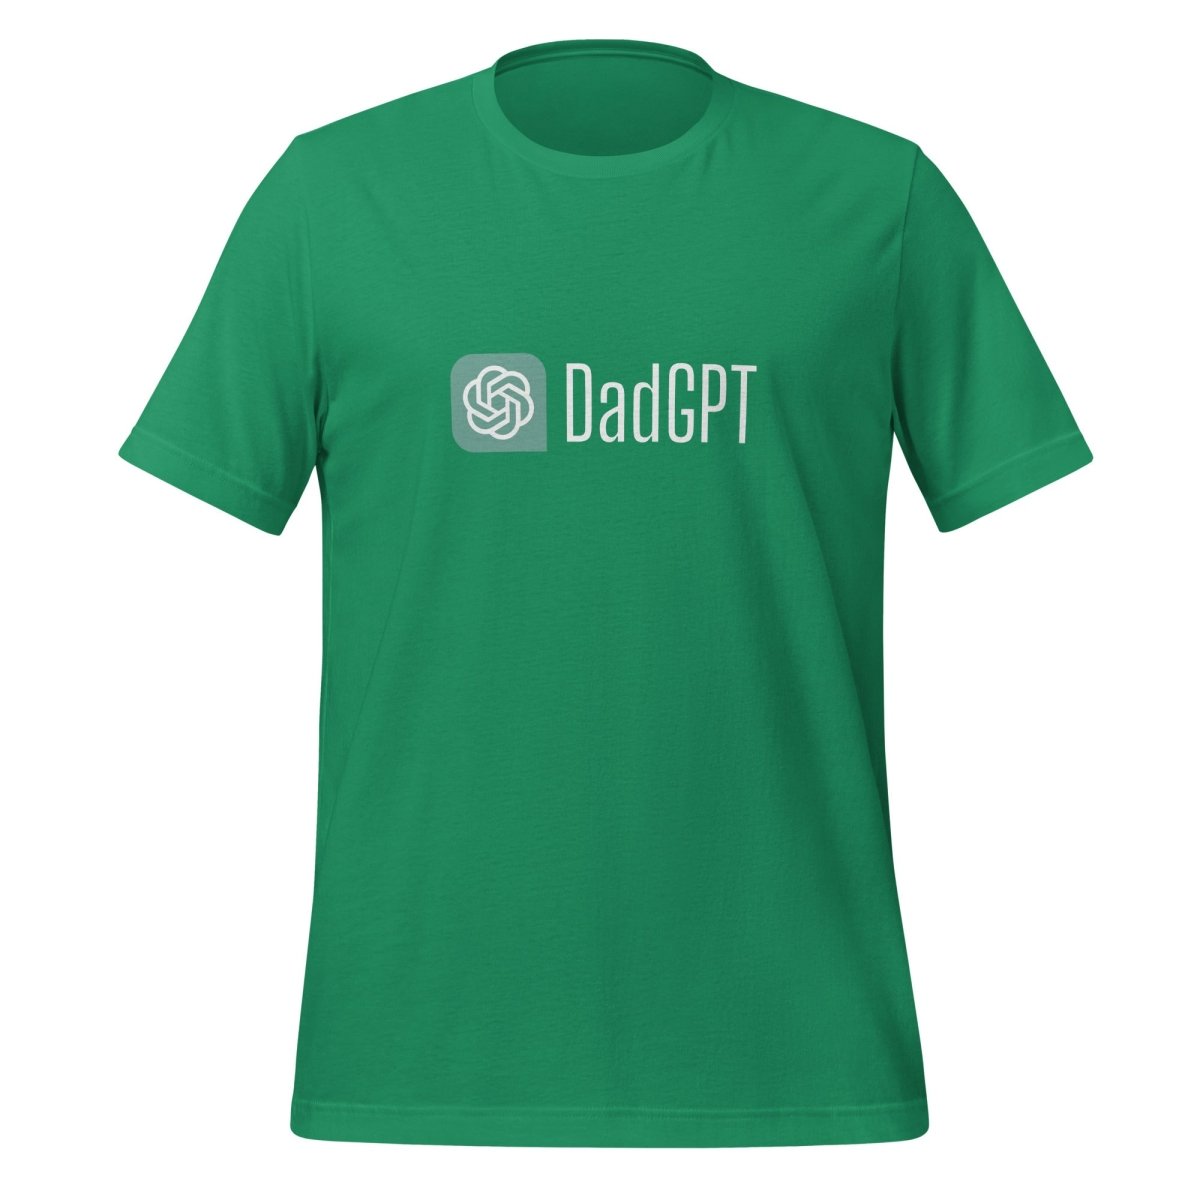 DadGPT T - Shirt 3 (unisex) - Kelly - AI Store